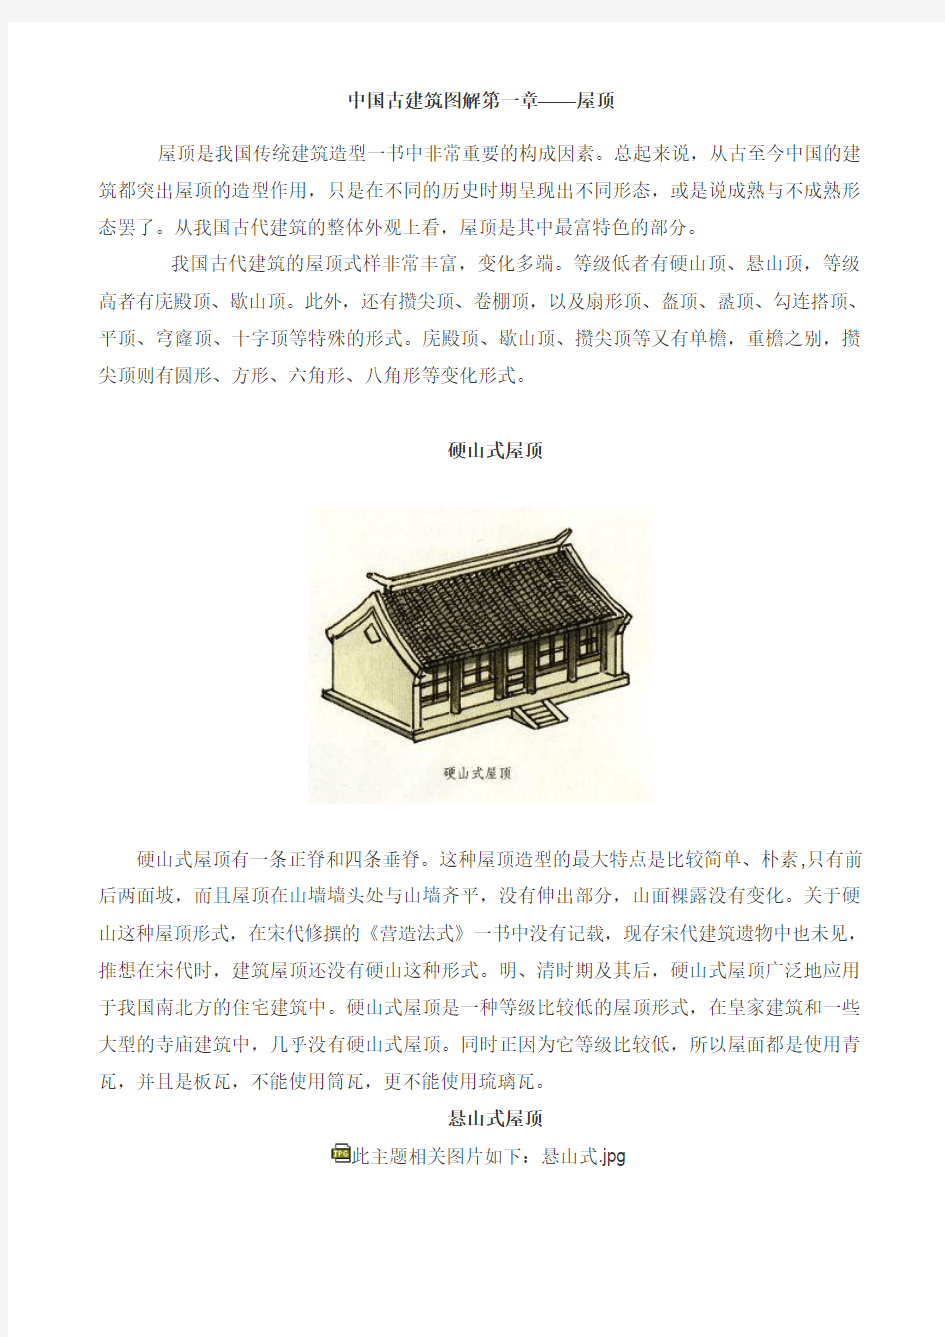 中国古建筑图解-屋顶